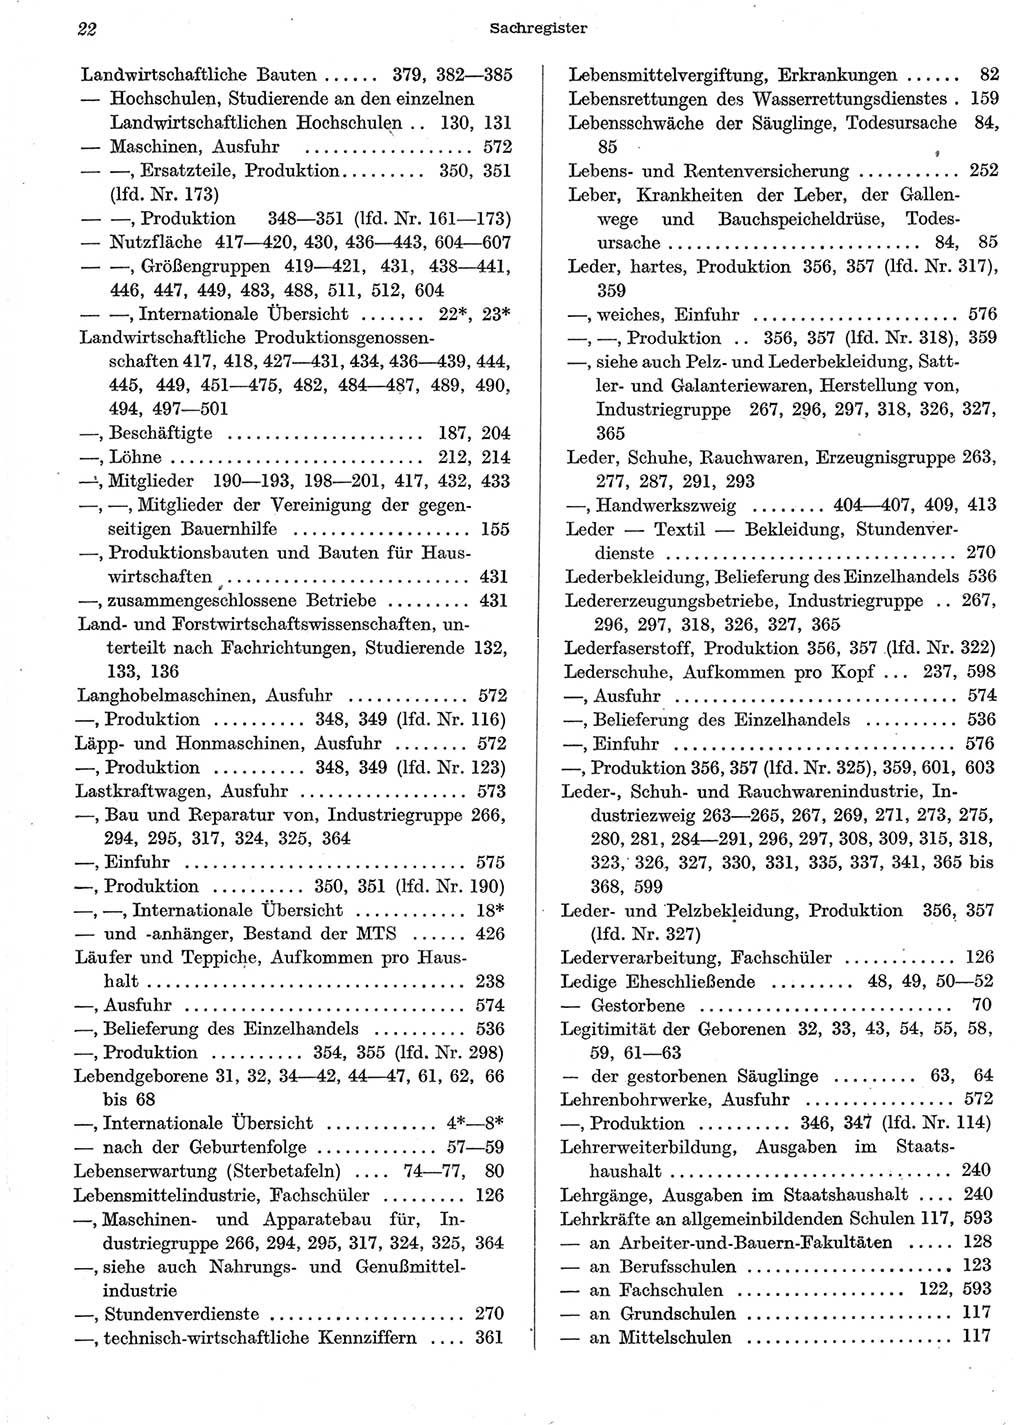 Statistisches Jahrbuch der Deutschen Demokratischen Republik (DDR) 1958, Seite 22 (Stat. Jb. DDR 1958, S. 22)